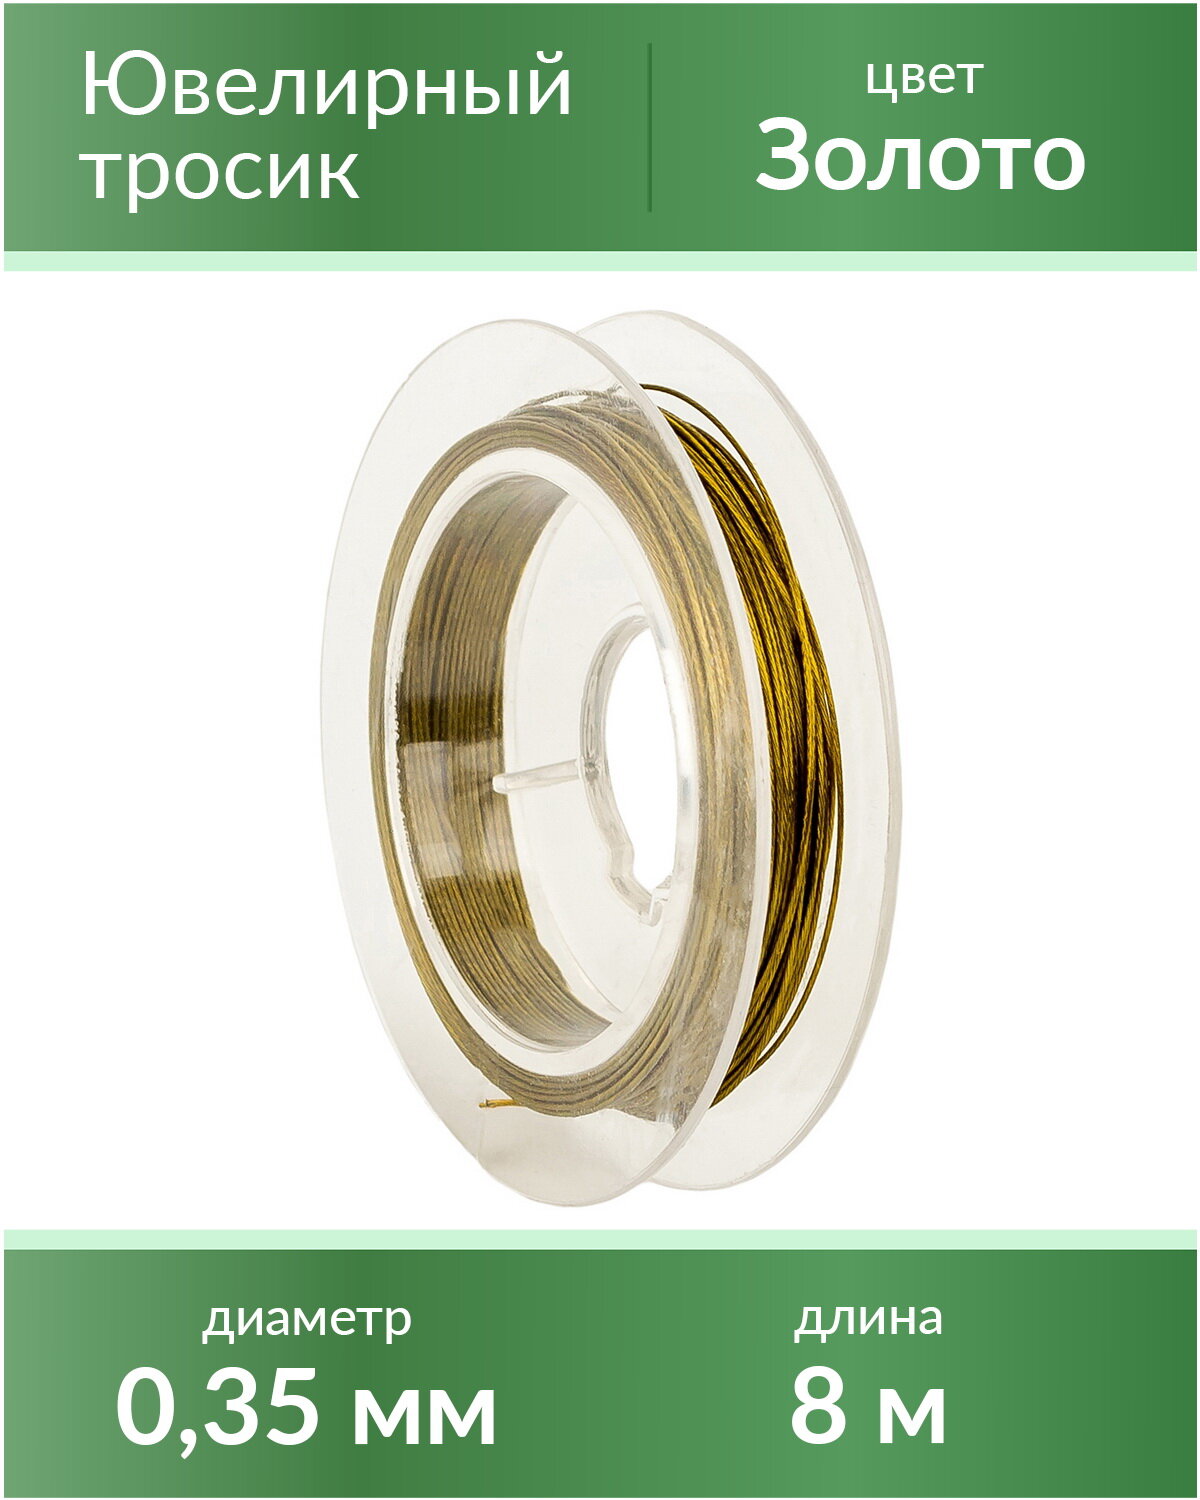 Тросик ювелирный (ланка), диаметр 0,35 мм, цвет: золото